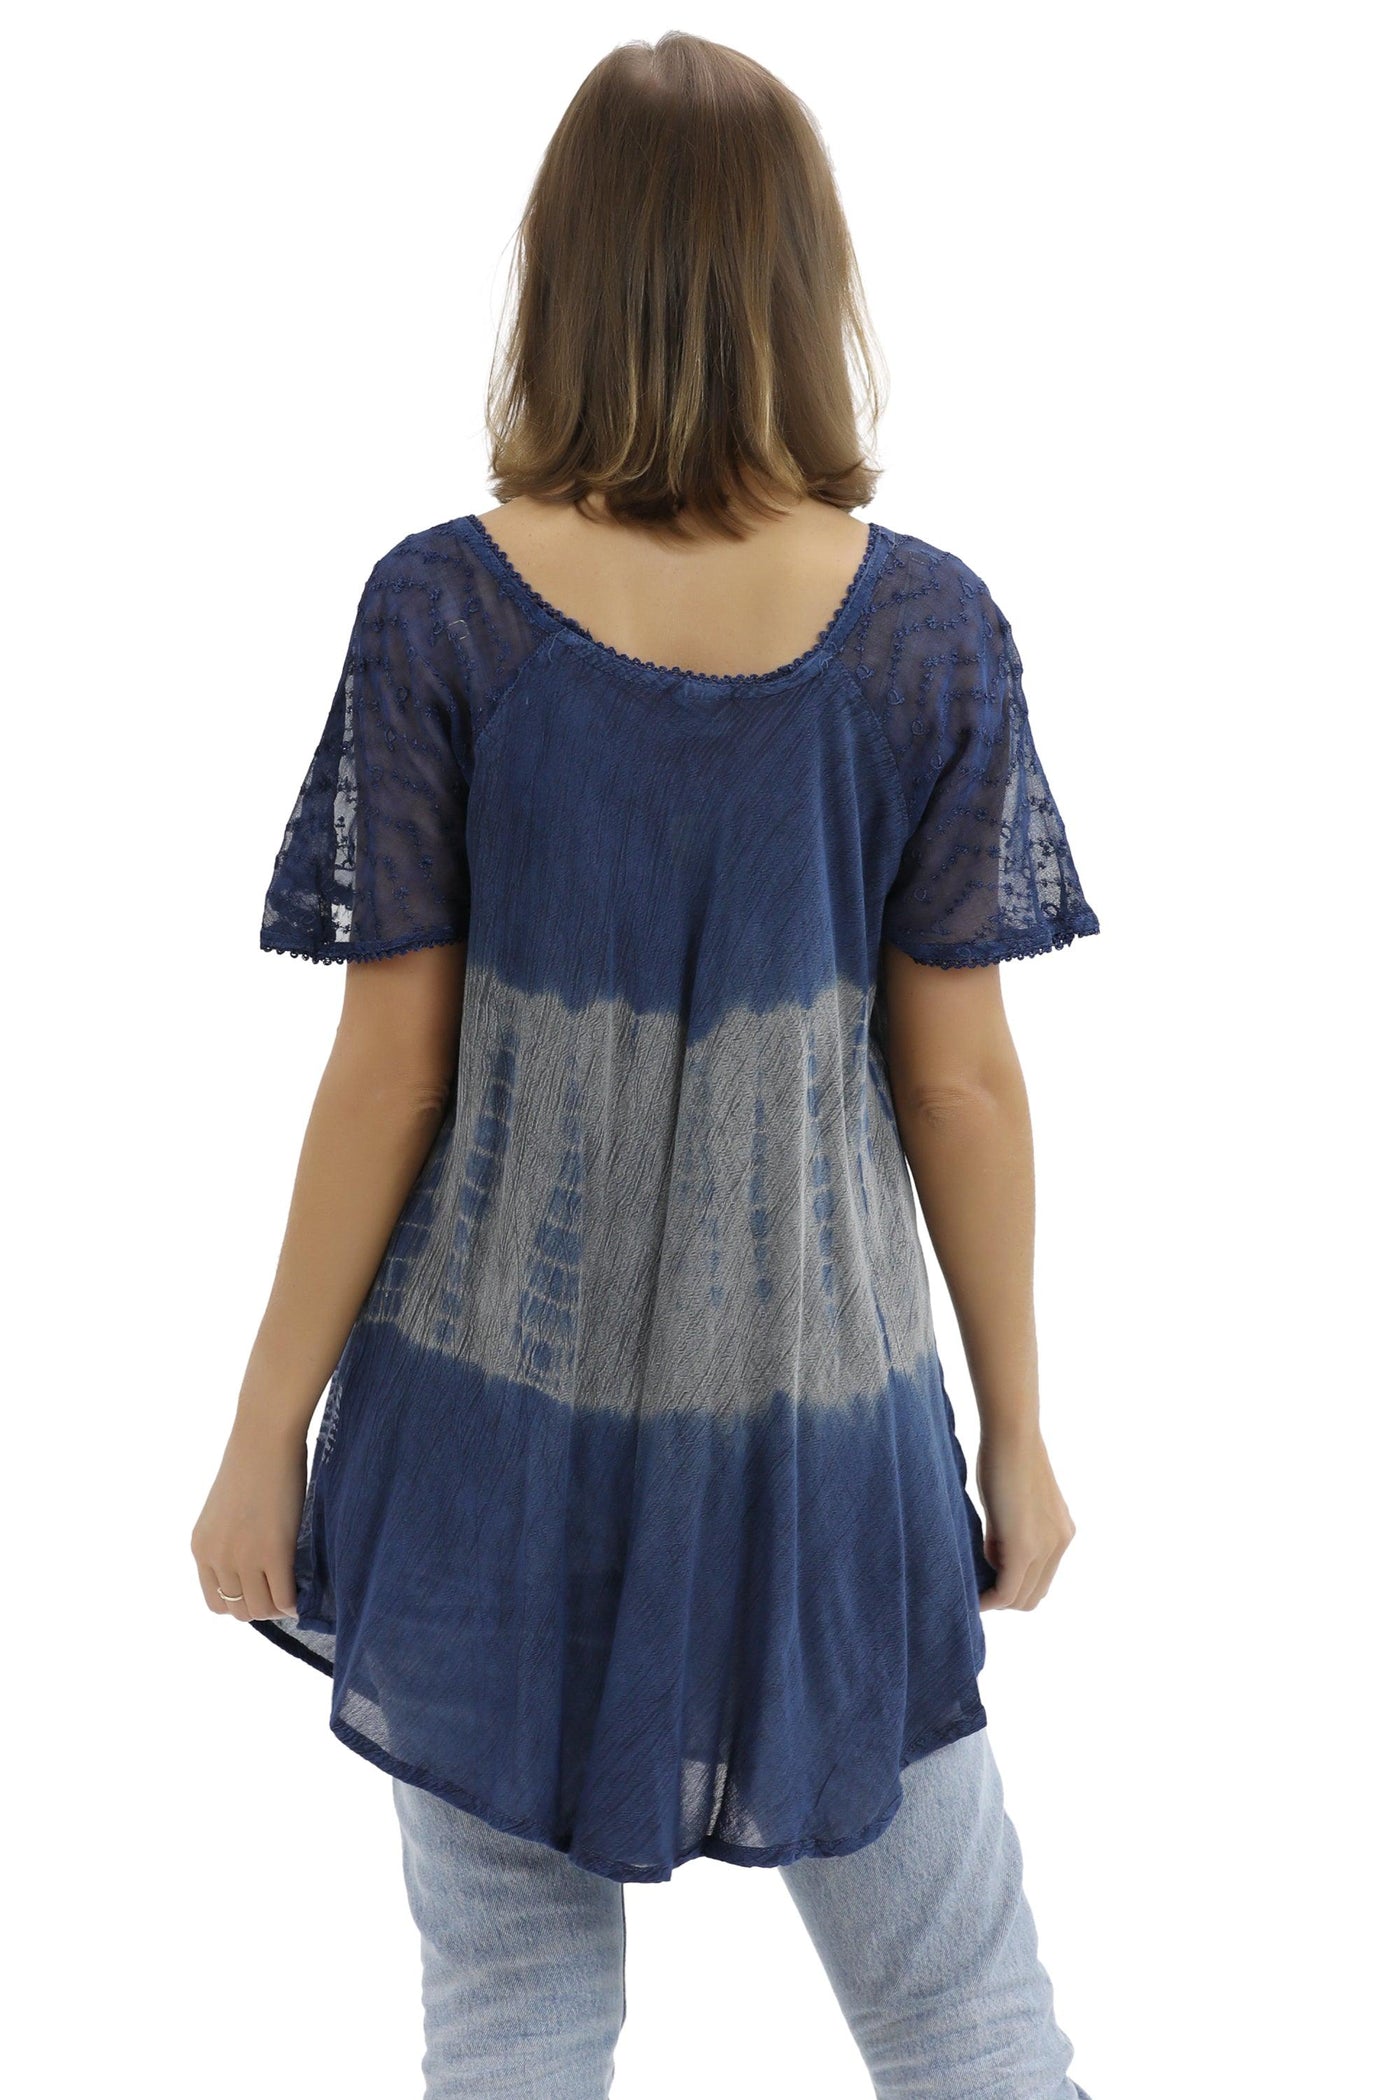 Batik Print Tie Dye Cap Sleeve Blouse 17877  - Advance Apparels Inc